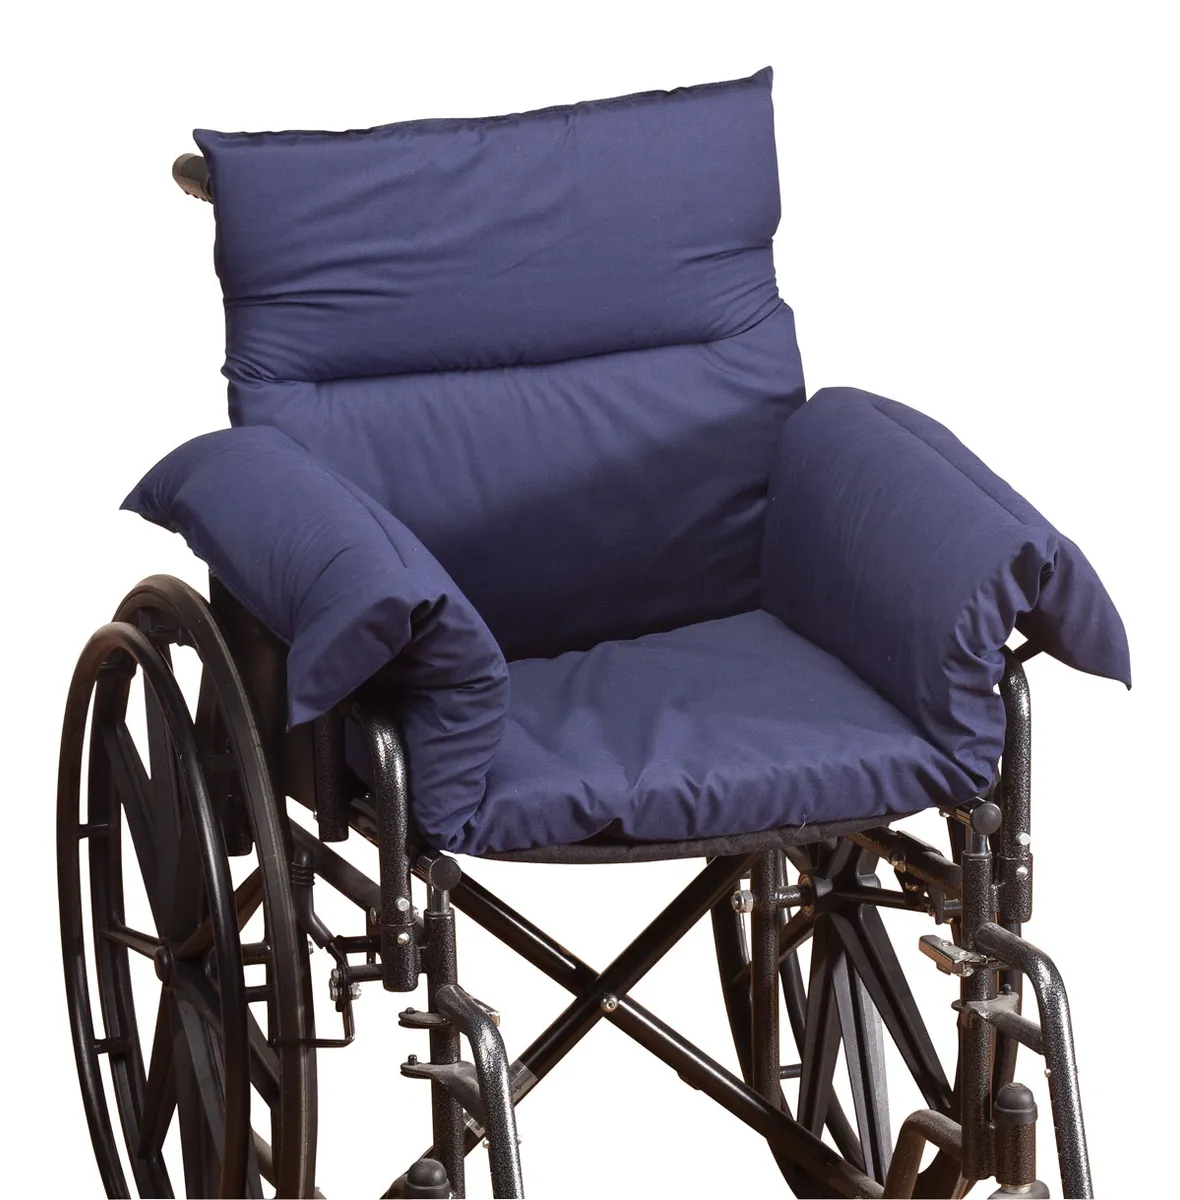 Best cushion for wheel chair